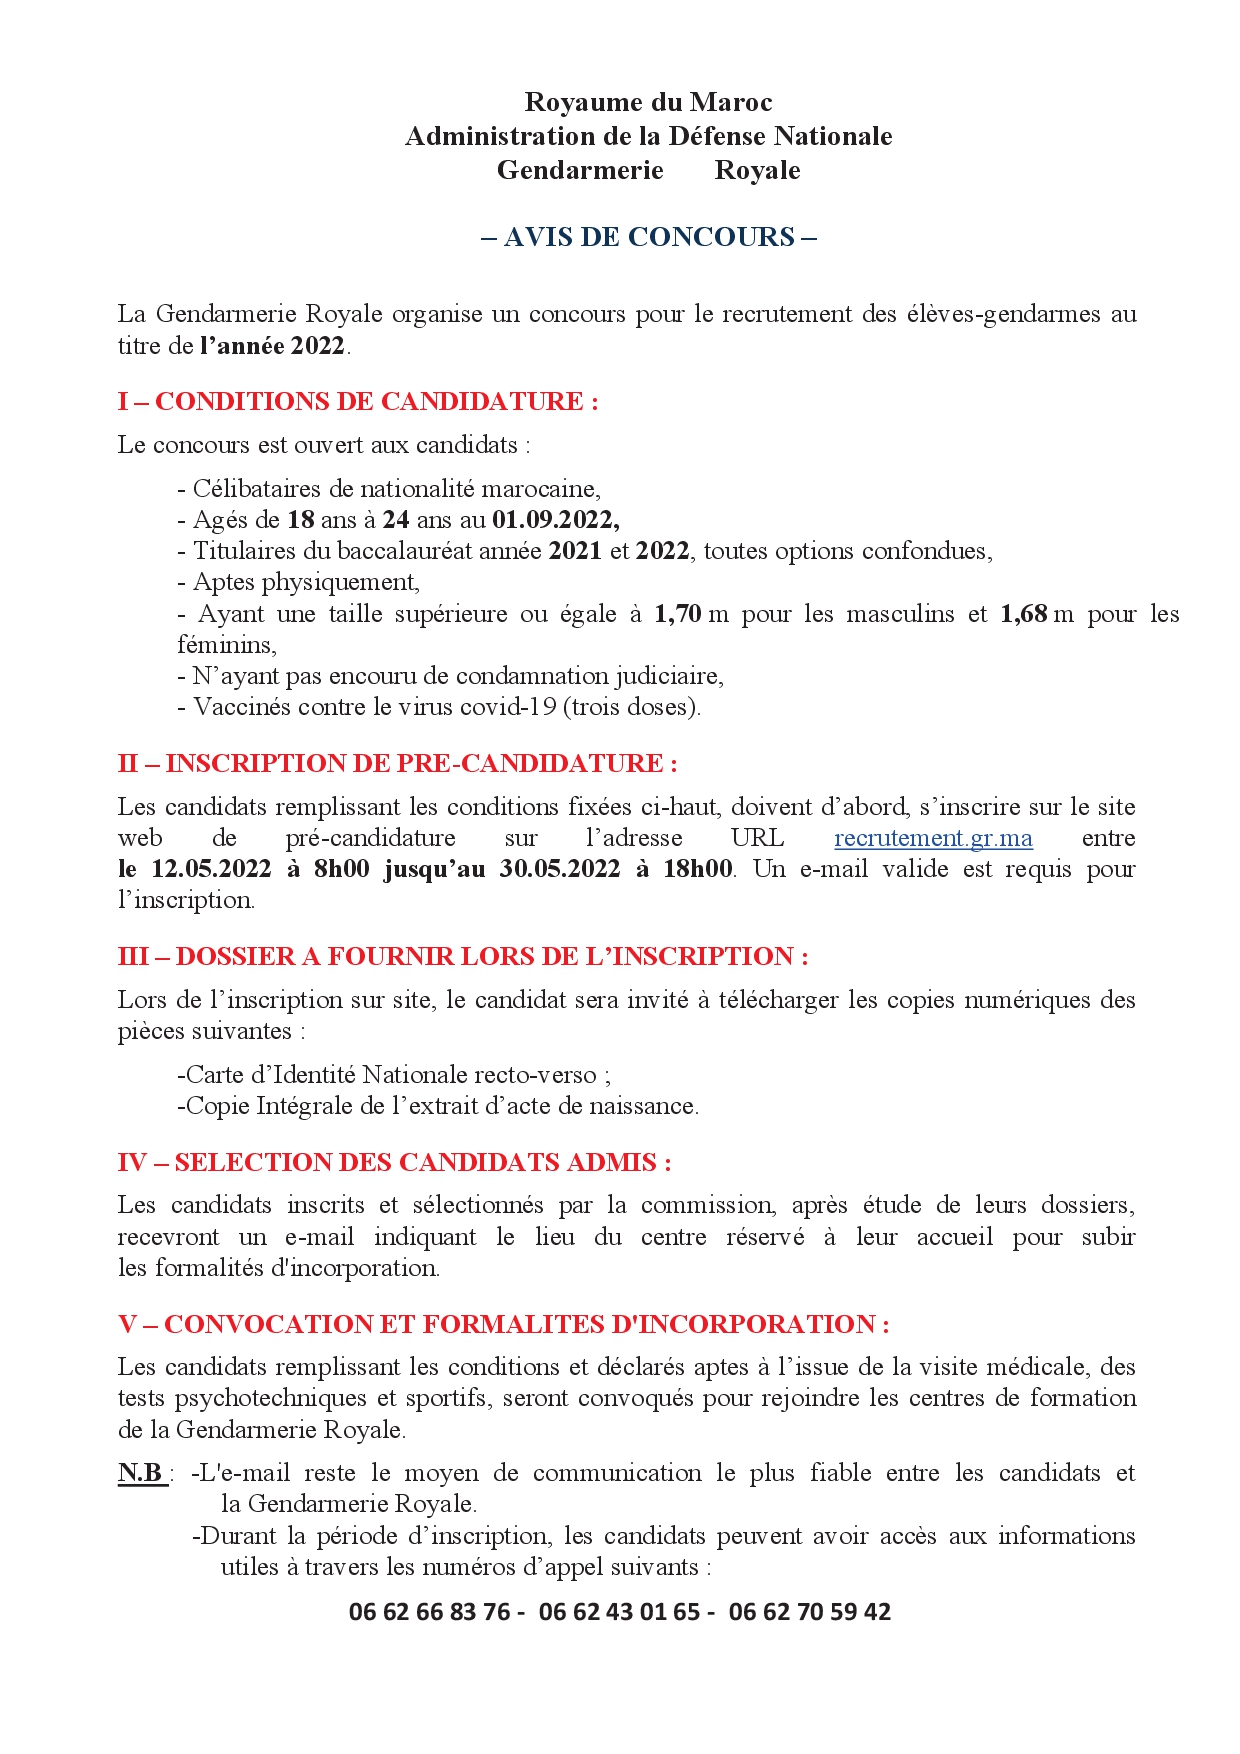 نص إعلان انخراط التلاميذ الدركيين لسنة 2022 باللغة الفرنسية